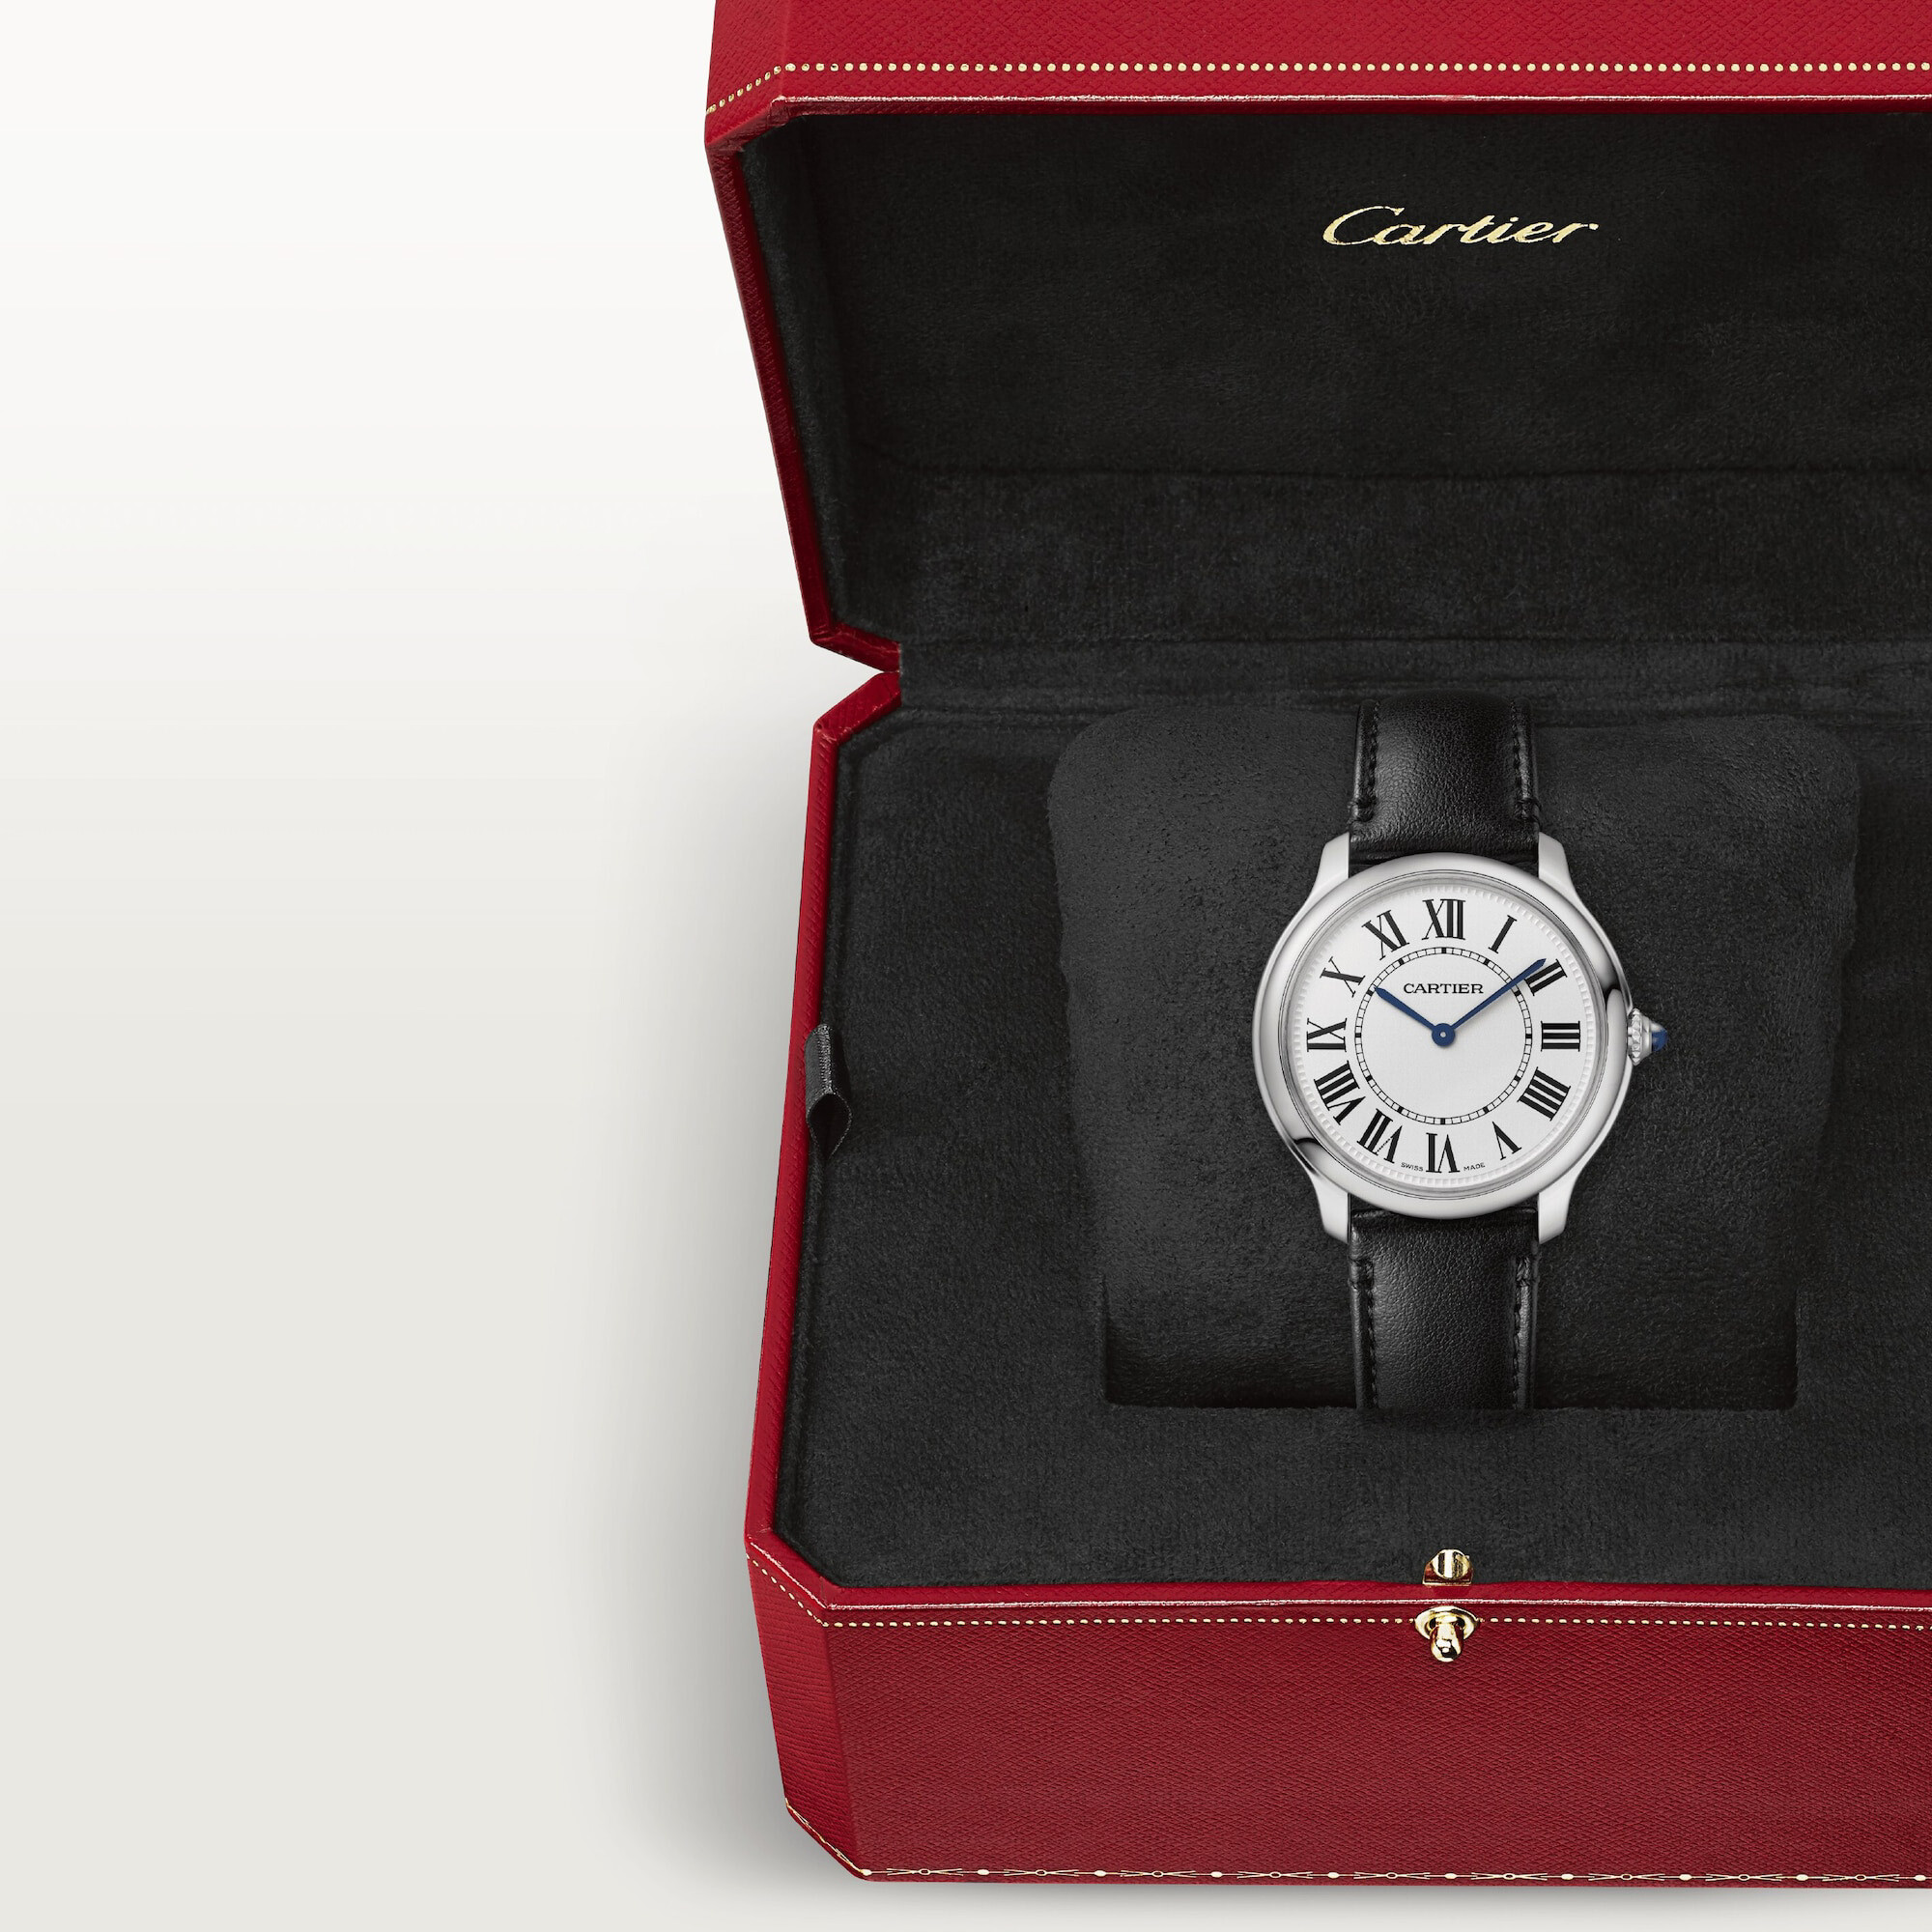 Purchase Ronde Must de Cartier watch, 36mm, quartz movement, steel, non- animal material bracelet